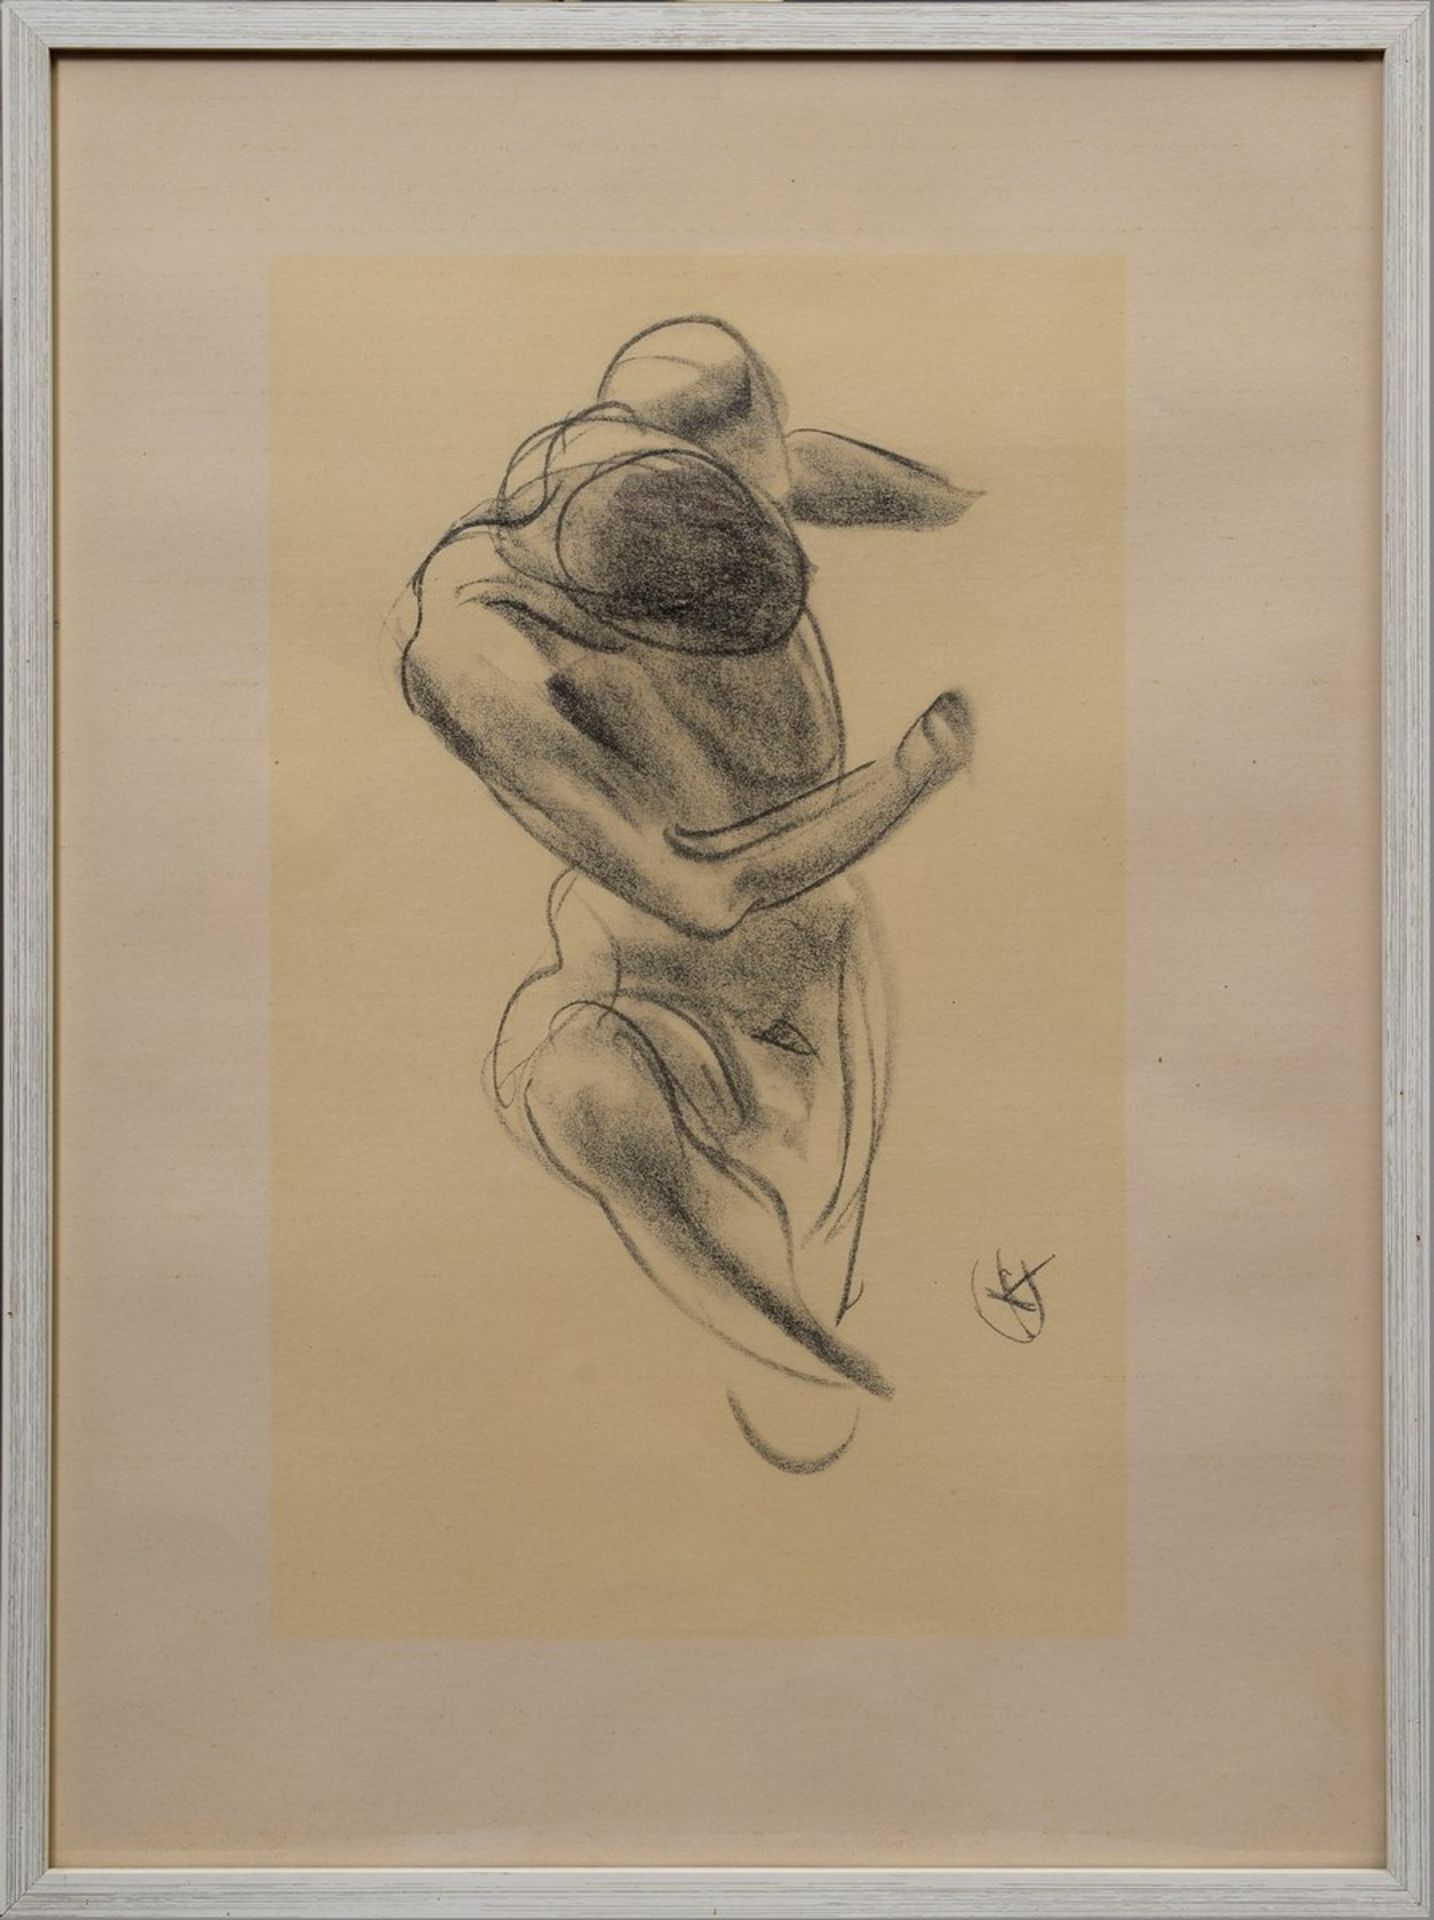 3 Diverse Kolbe, Georg (1877-1947) "Akte, tordierte Körper“, Lithographien von Kohlezeichnungen, - Bild 2 aus 4